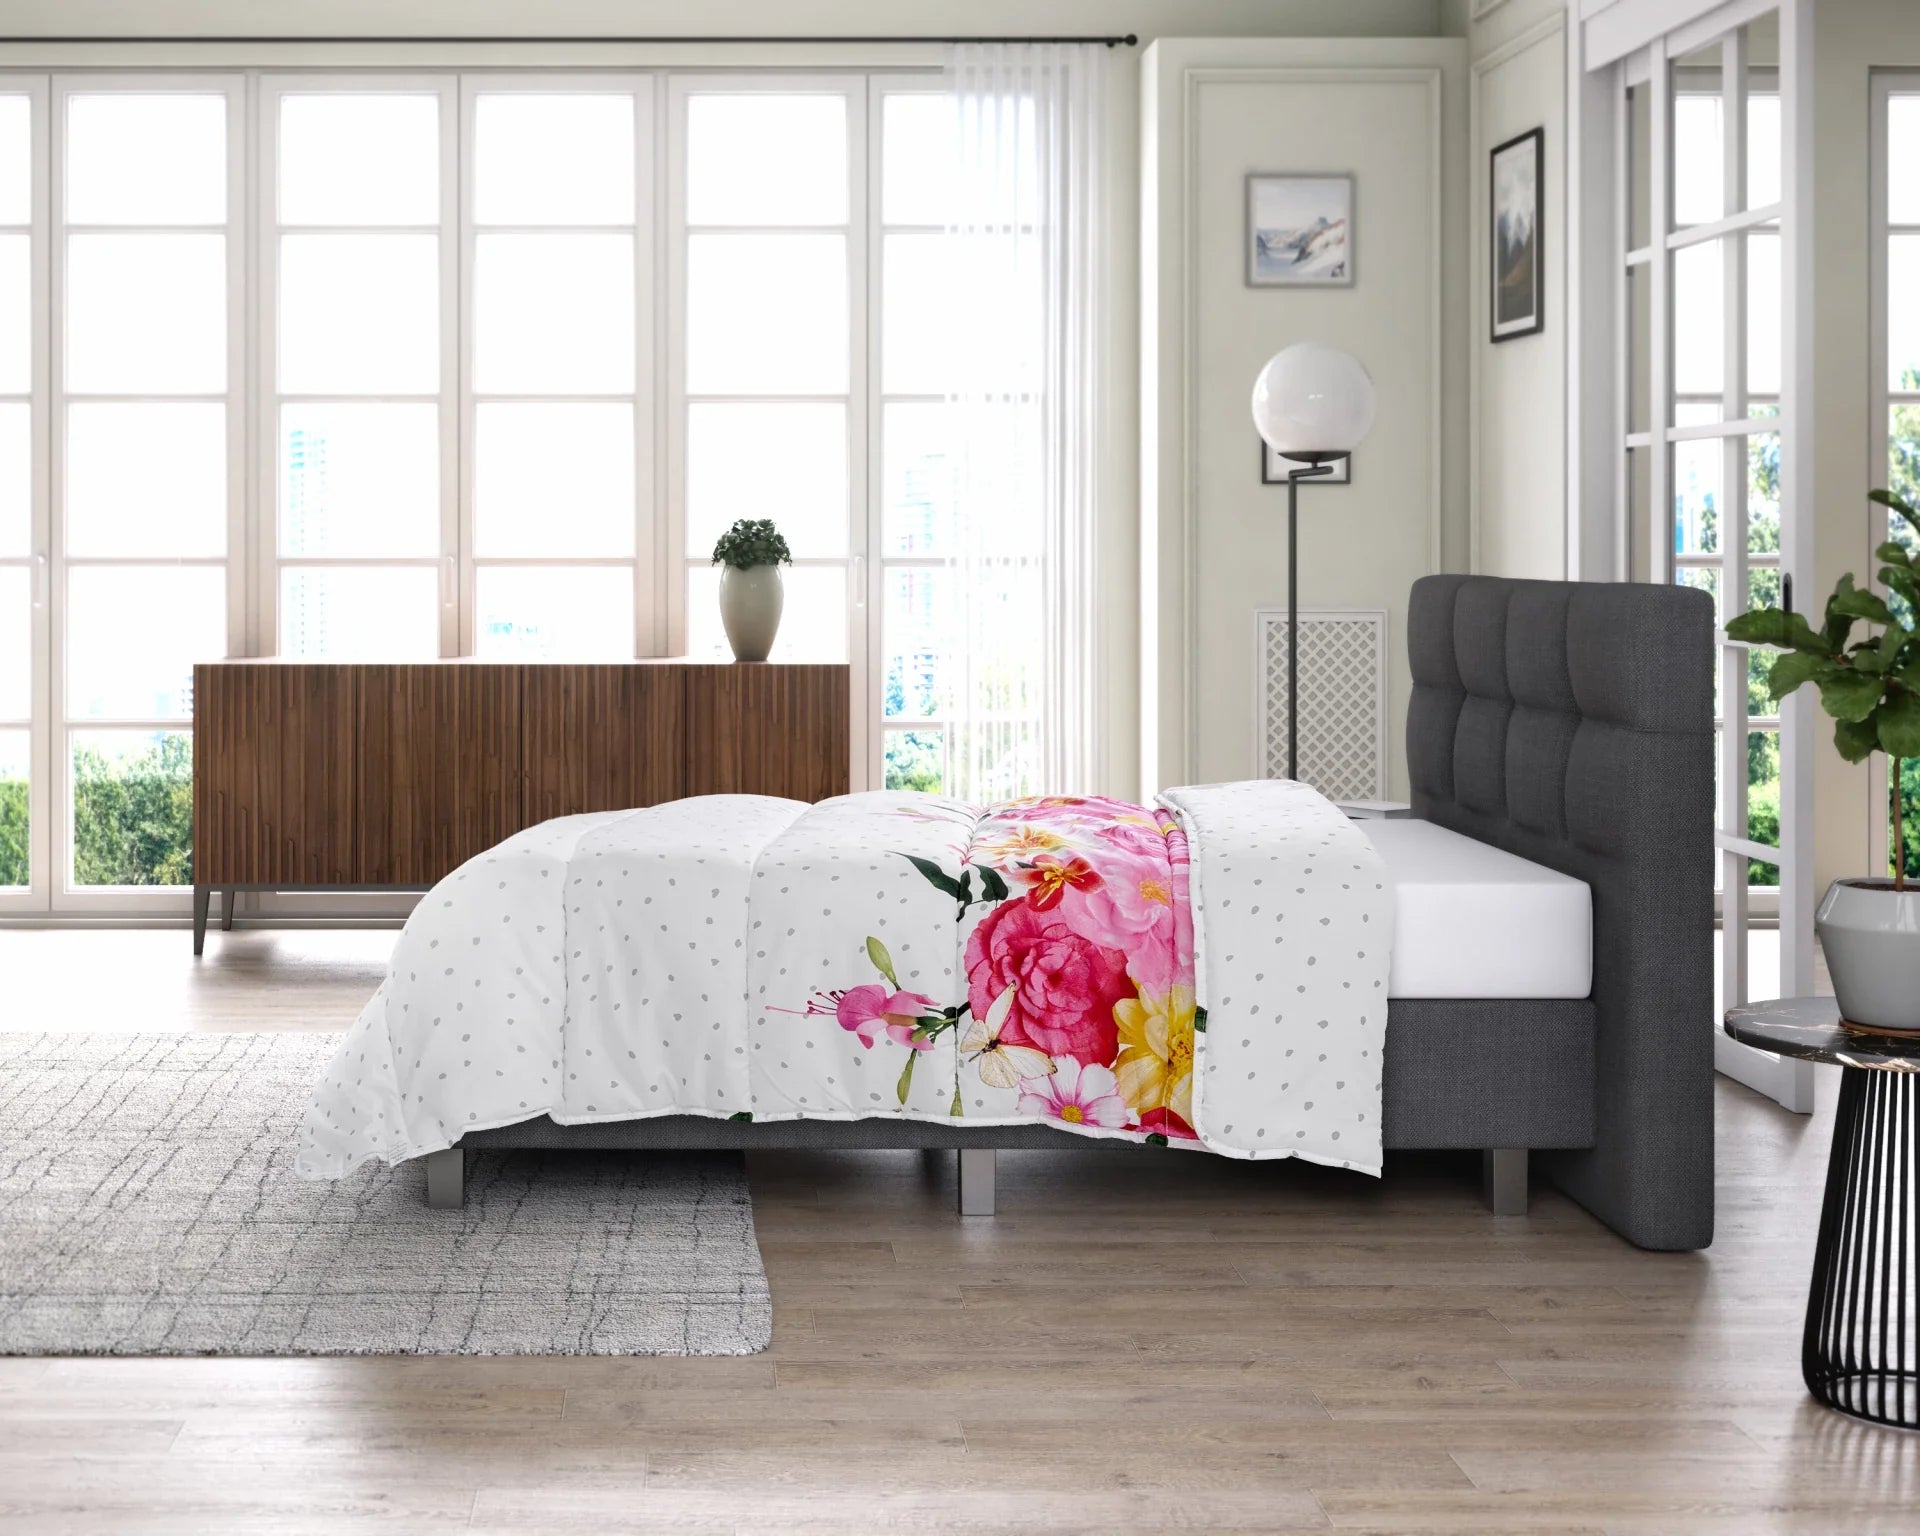 Bettdecke ohne Bezug | Love Garden - Bedruckte Bettdecke - Wärmeklasse 2 | geeignet für das ganze Jahr - Waschbare Bettdecke